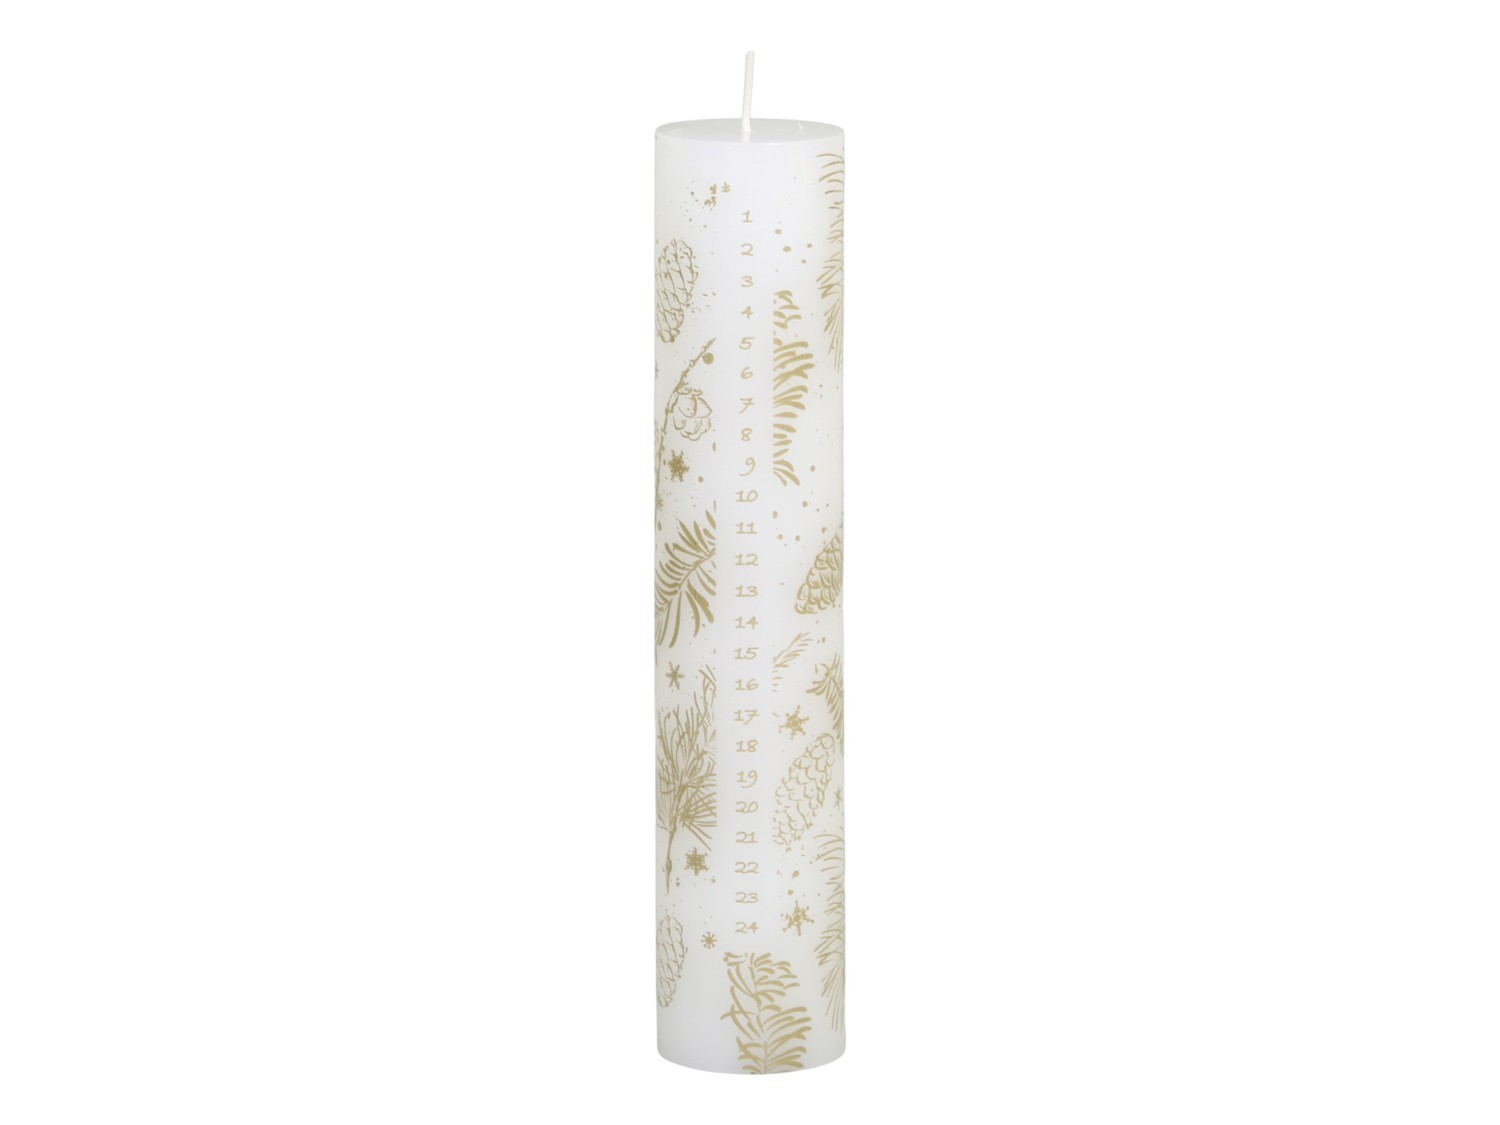 Bílo-zlatá adventní svíčka s čísly 1-24 Advent Candle - Ø 5*25cm / 60h Chic Antique